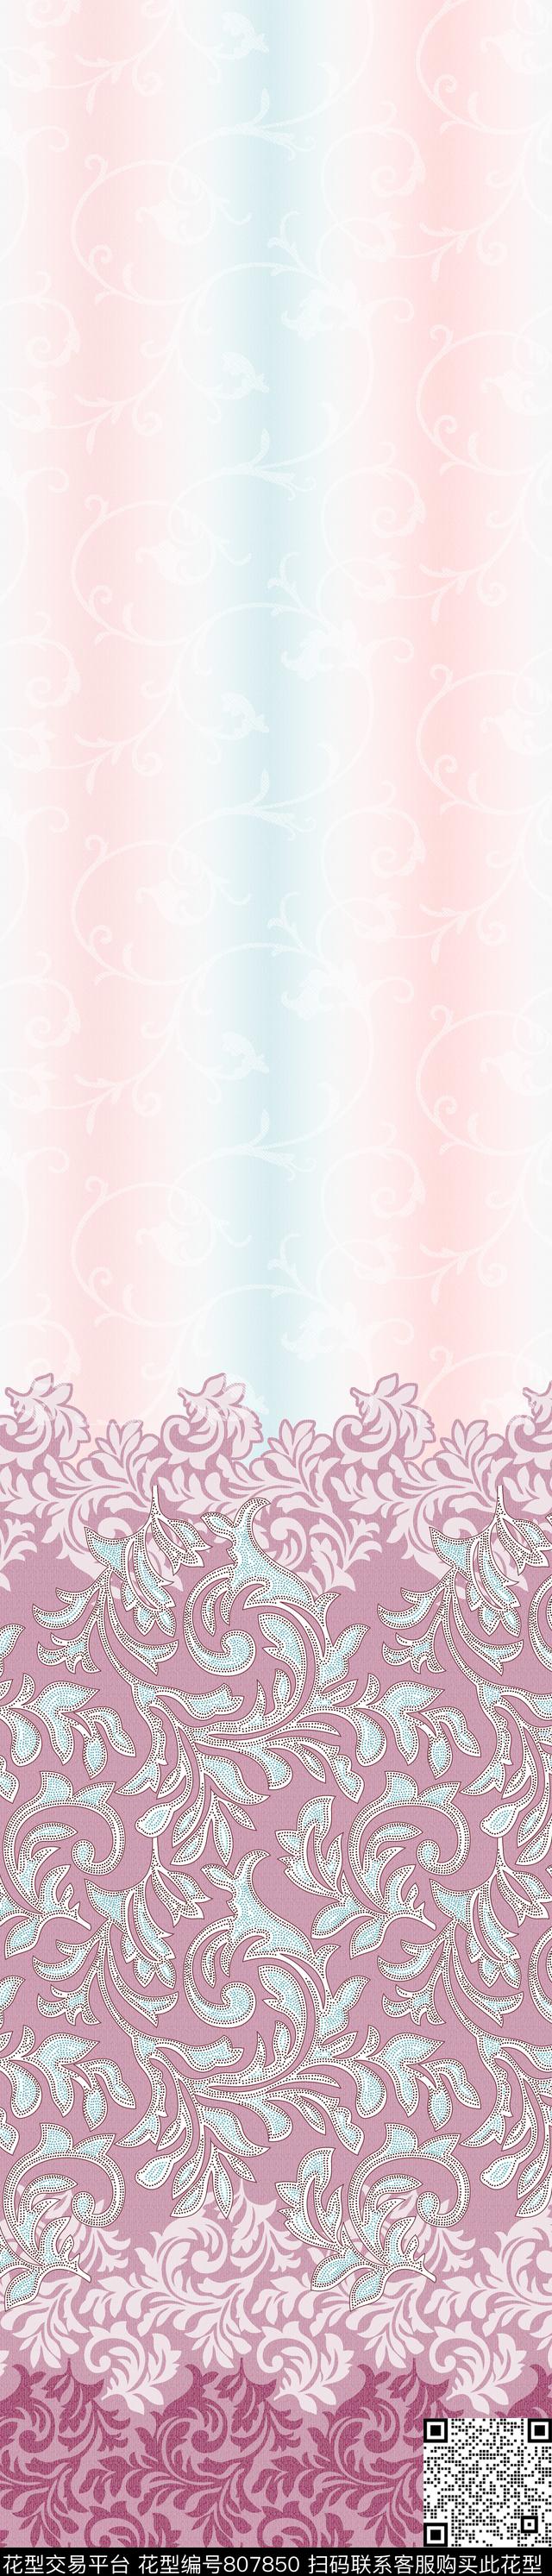 YJH170319h.jpg - 807850 - 彩条 窗帘 欧式 - 传统印花花型 － 窗帘花型设计 － 瓦栏